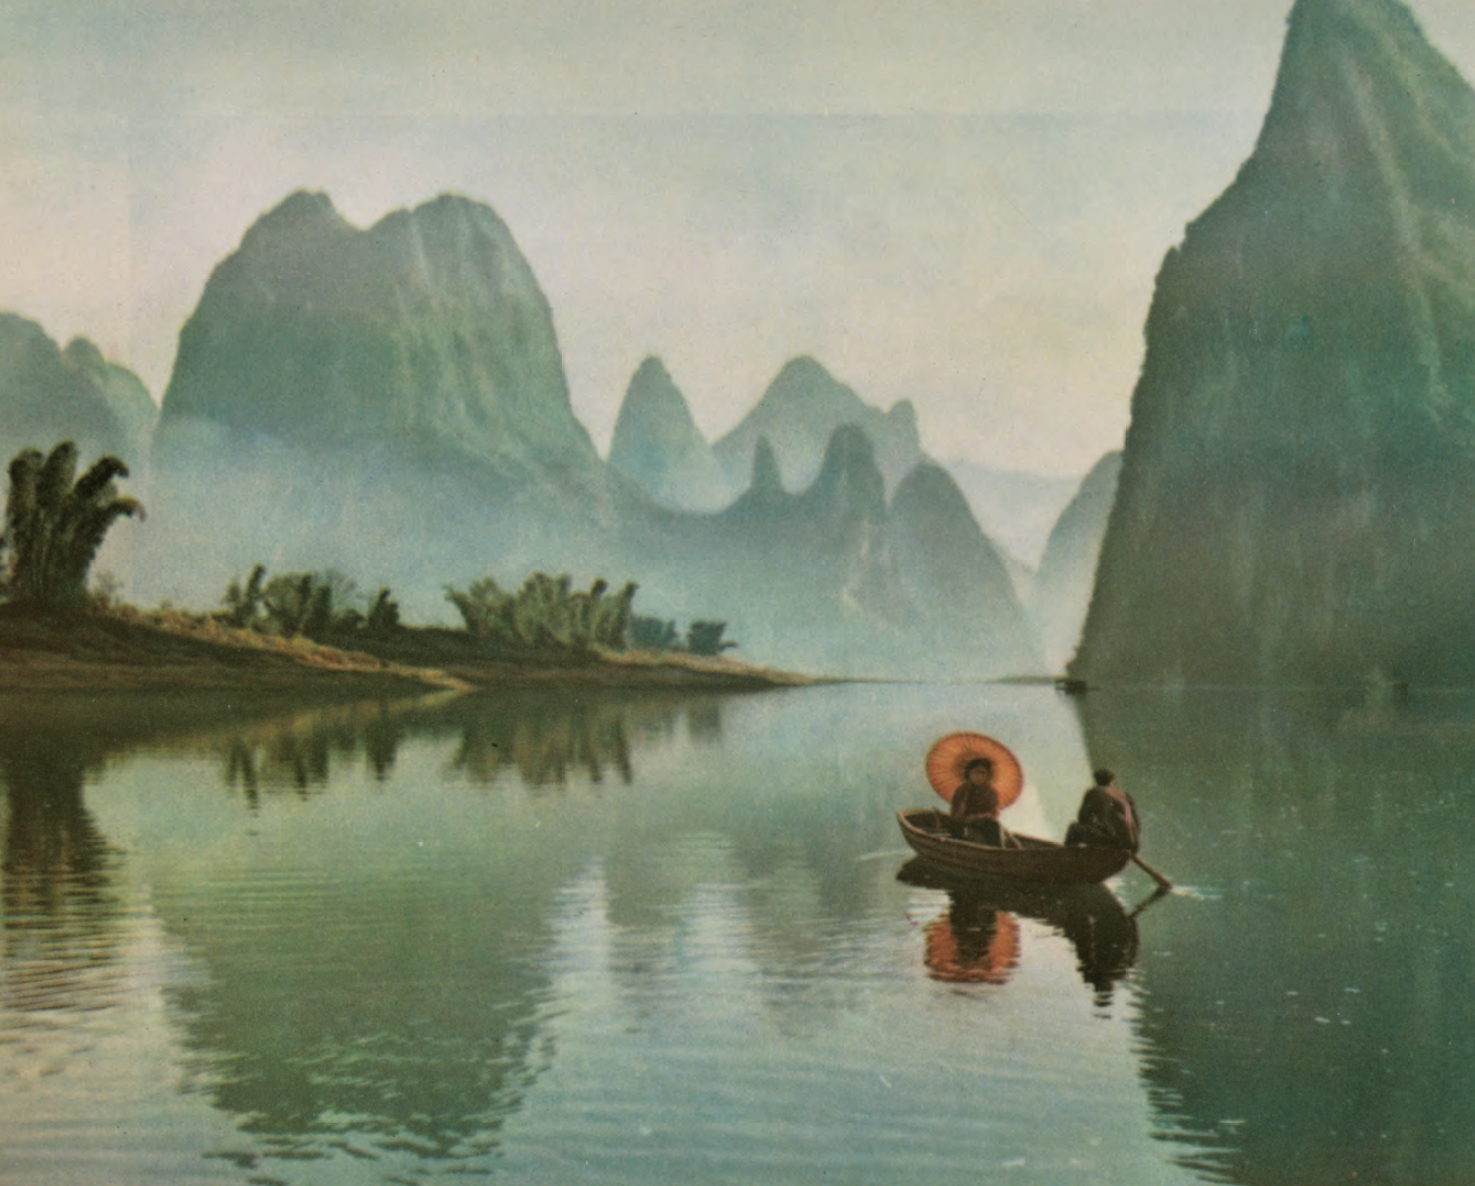 漓江早渡，陈复礼 发表于《中国摄影》1961年1期.jpg